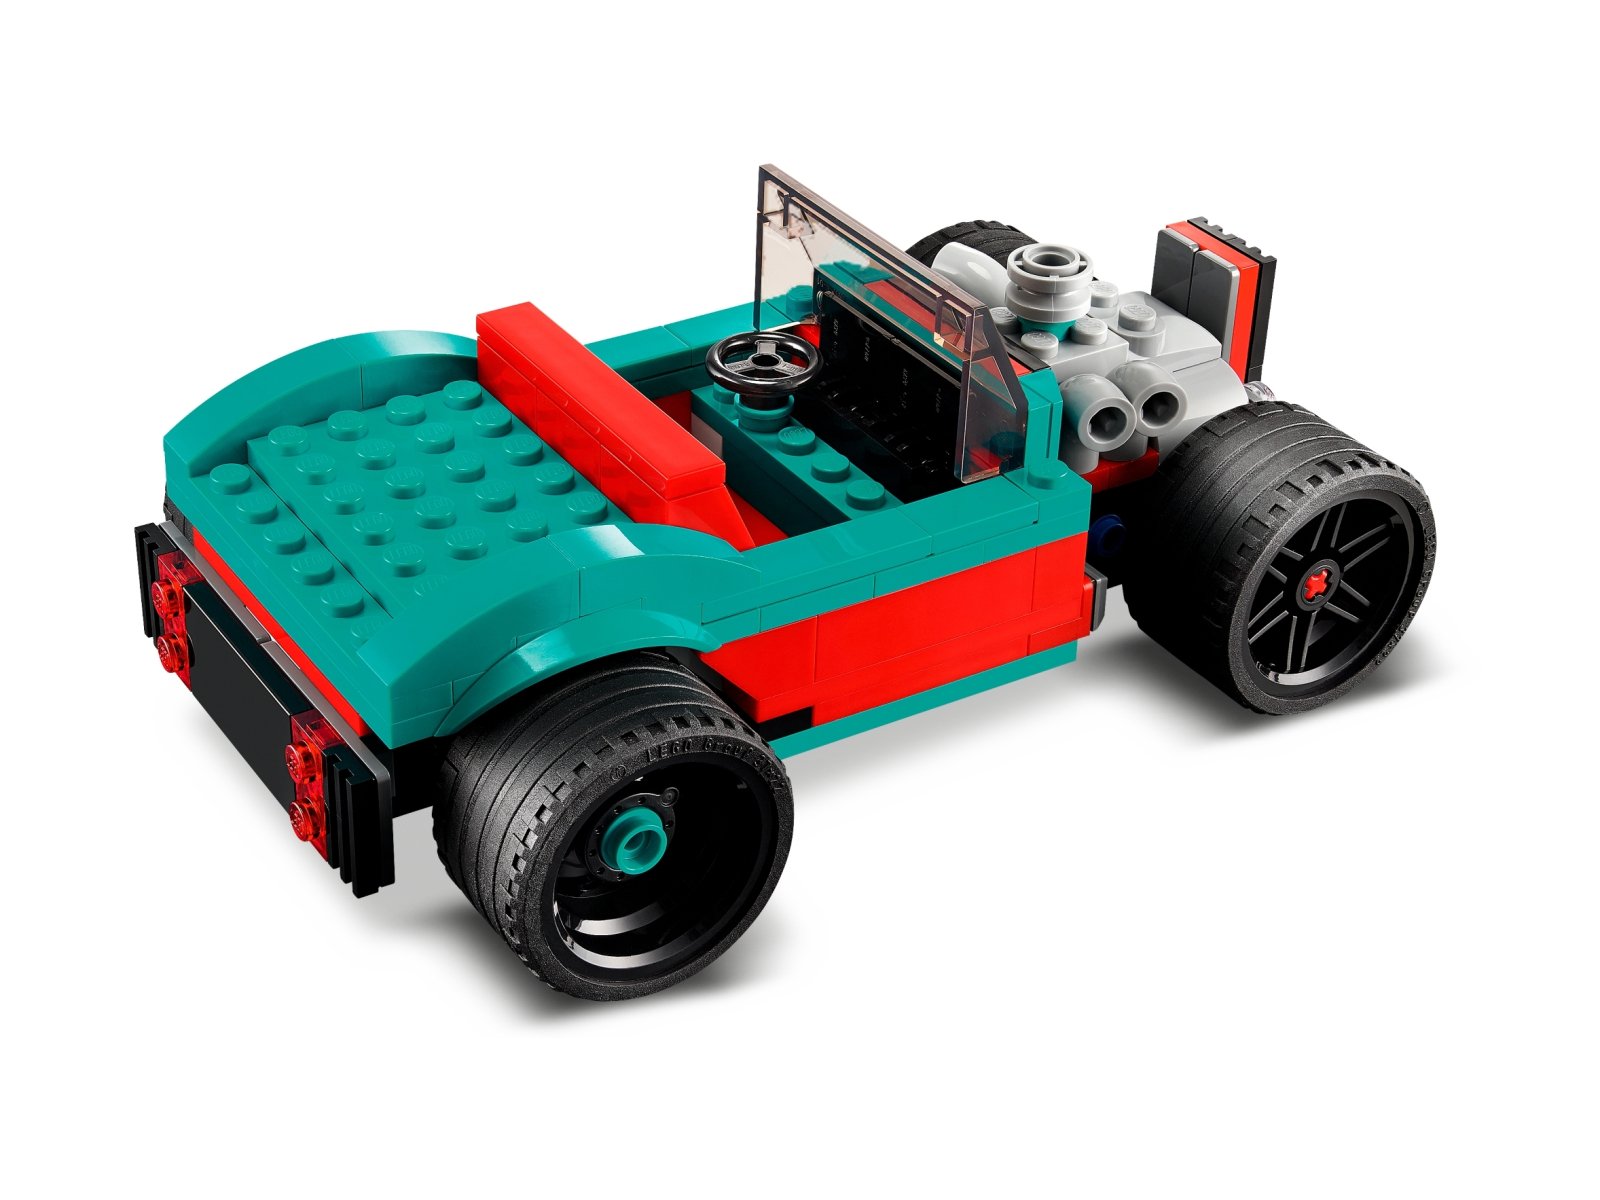 LEGO 31127 Creator 3 w 1 Uliczna wyścigówka